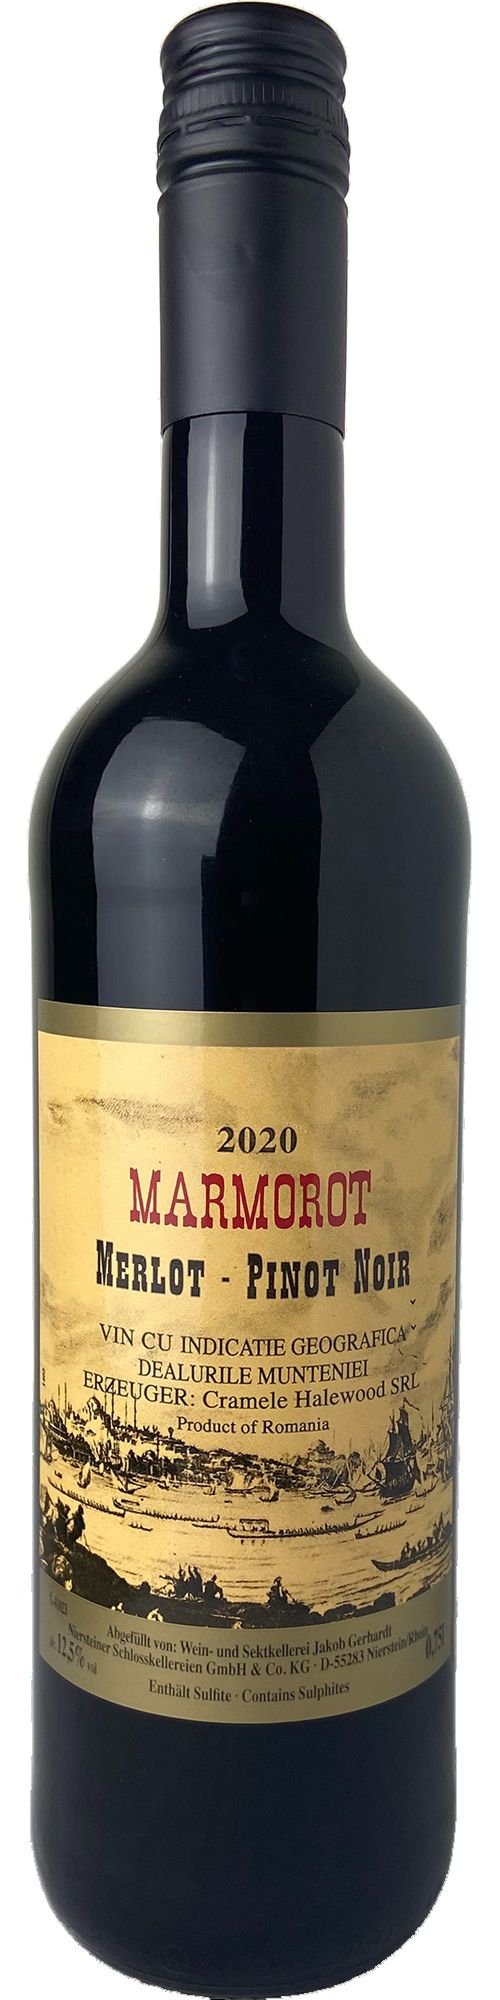 Marmorot Merlot Pinot Noir Rotwein lieblich